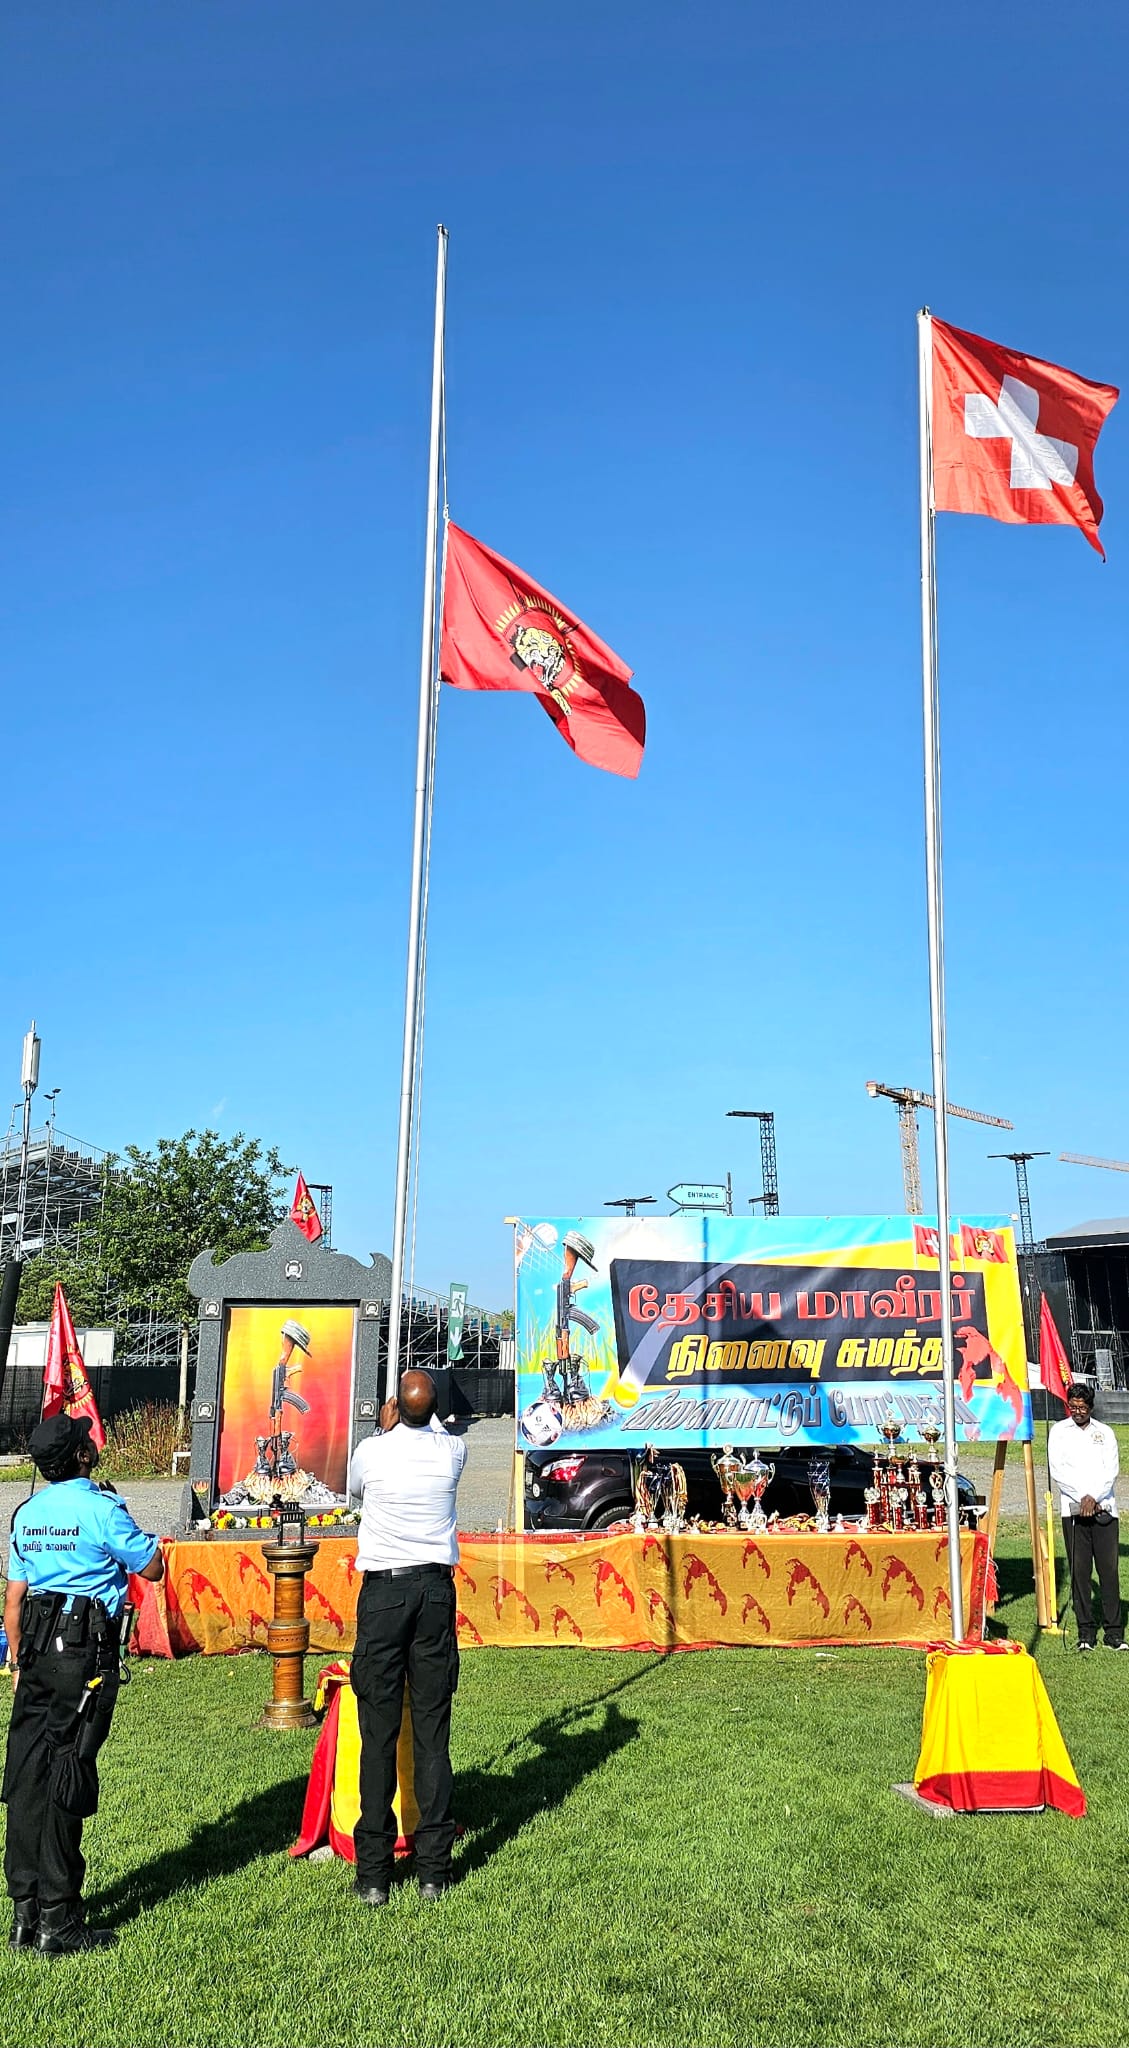 சுவிசில் சிறப்பாக நடைபெற்ற தமிழீழத் தேசிய மாவீரர் நினைவு சுமந்த விளையாட்டுப் போட்டிகள் 2023! 21